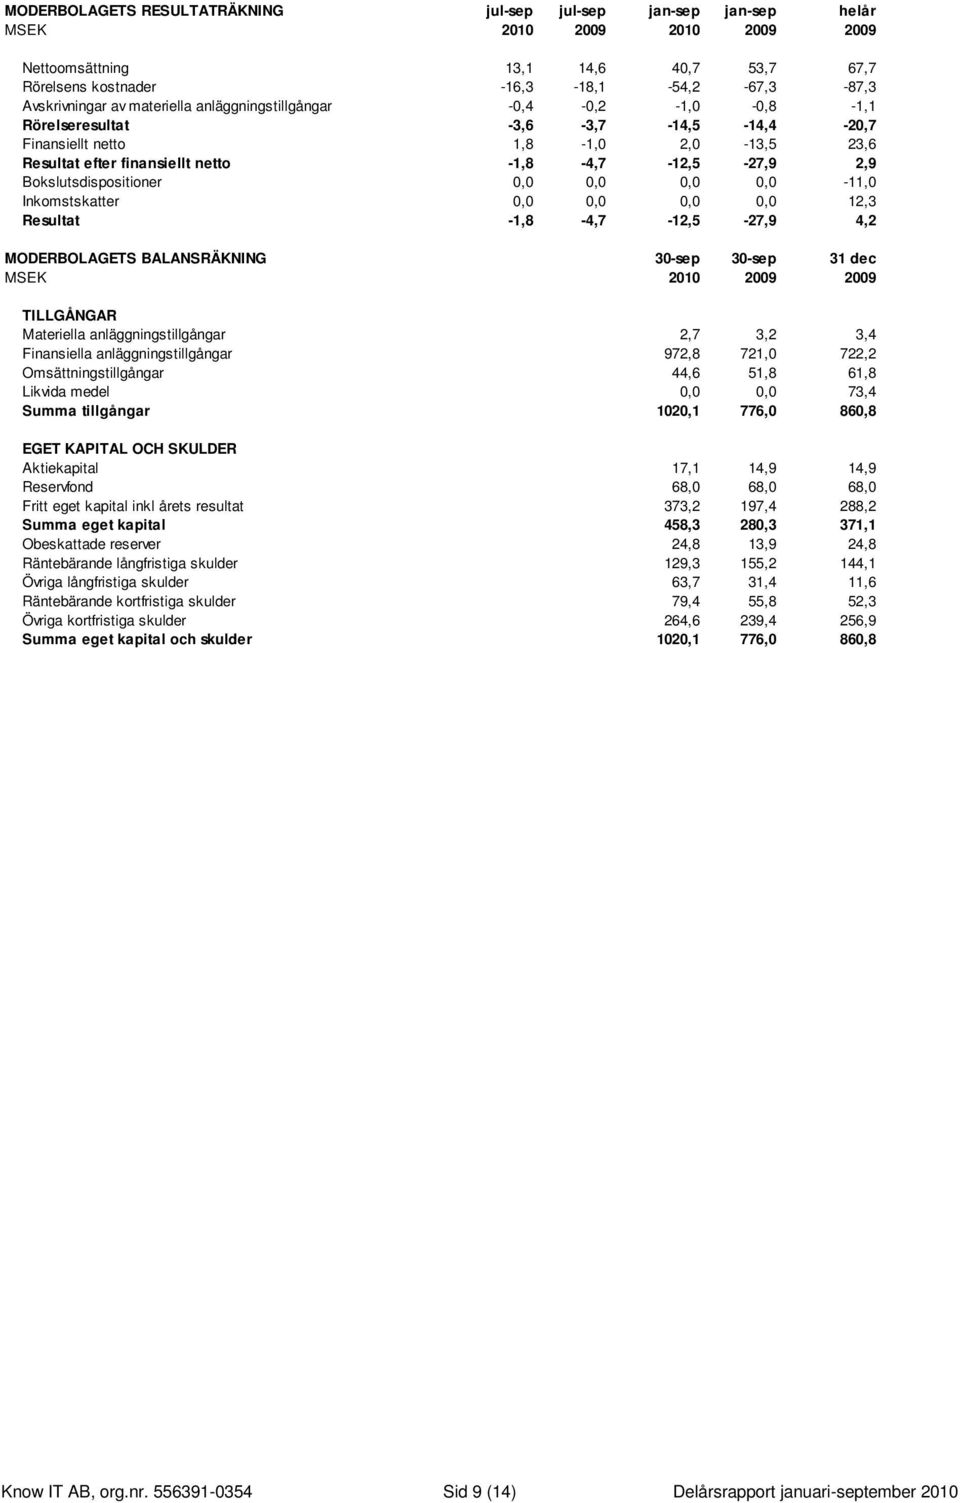 Bokslutsdispositioner 0,0 0,0 0,0 0,0-11,0 Inkomstskatter 0,0 0,0 0,0 0,0 12,3 Resultat -1,8-4,7-12,5-27,9 4,2 MODERBOLAGETS BALANSRÄKNING 30-sep 30-sep 31 dec MSEK 2010 2009 2009 TILLGÅNGAR